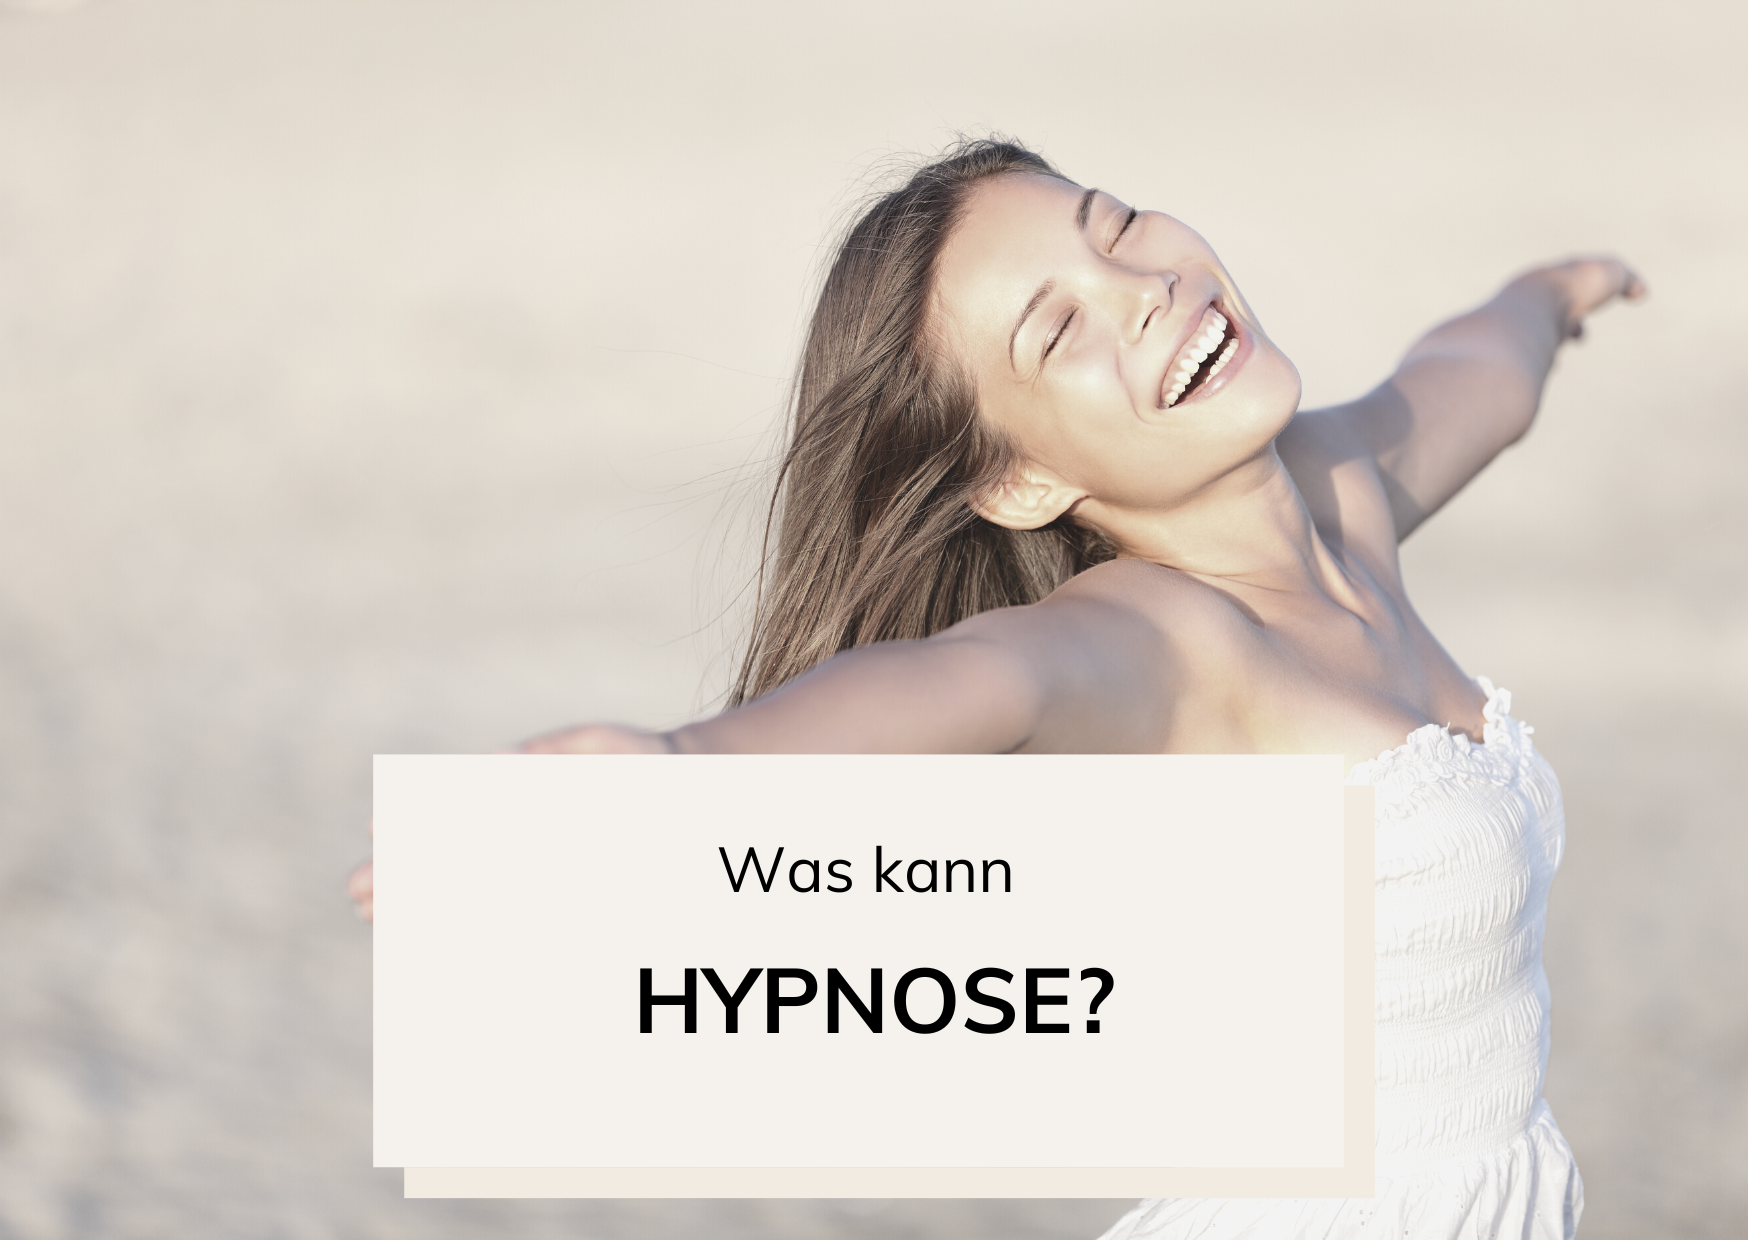 Was kann Hypnose? Wobei kann sie helfen?